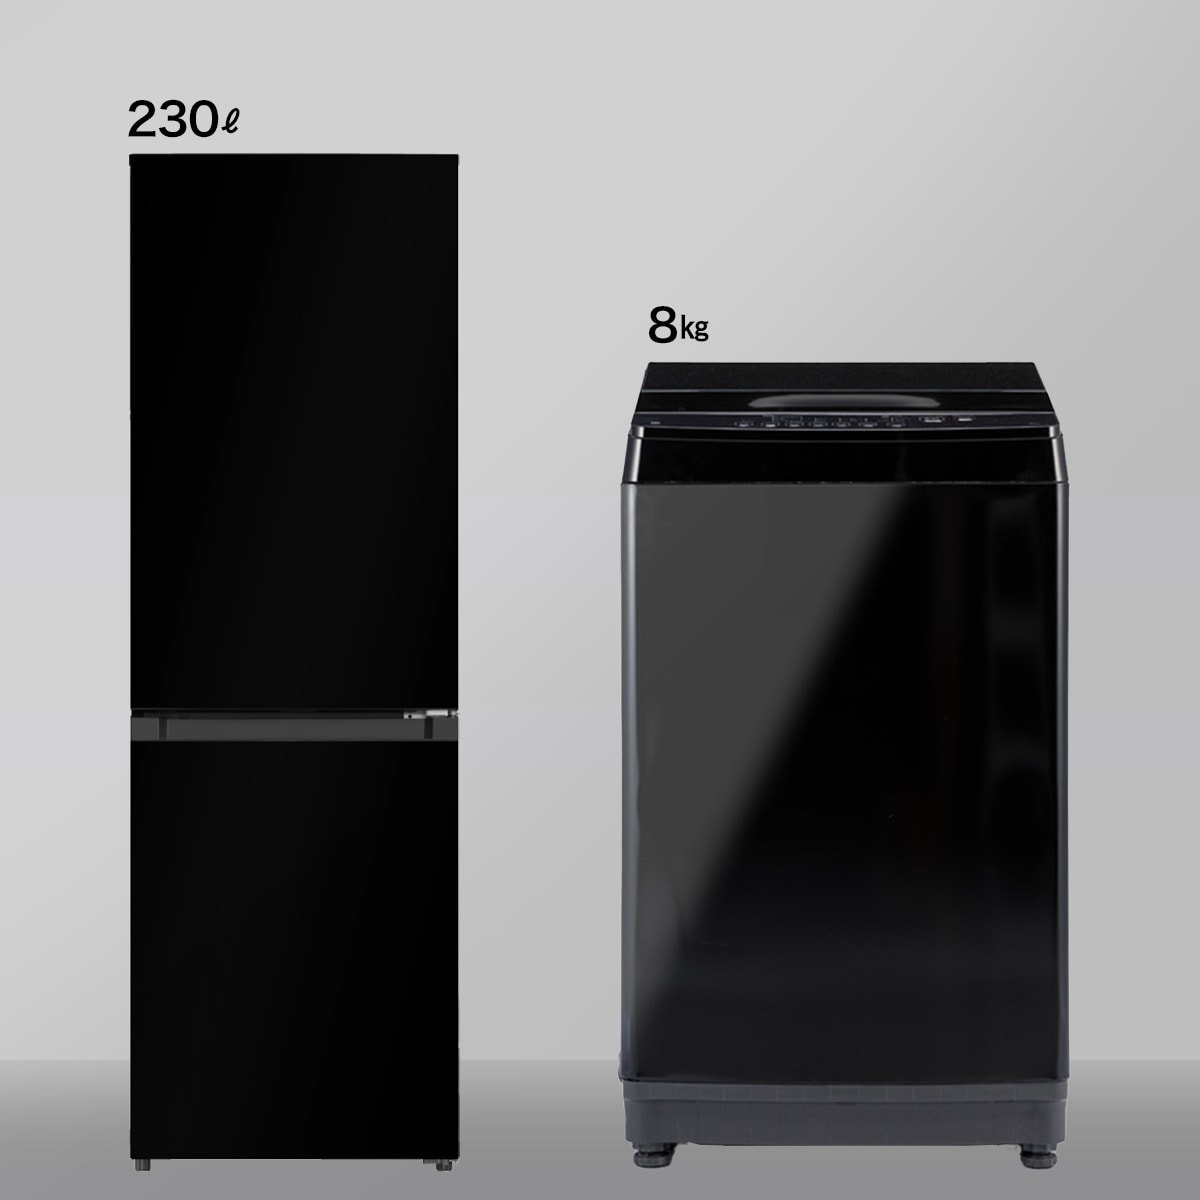 【家電2点セット】230L冷蔵庫＋8㎏洗濯機セット(ブラック)通販 